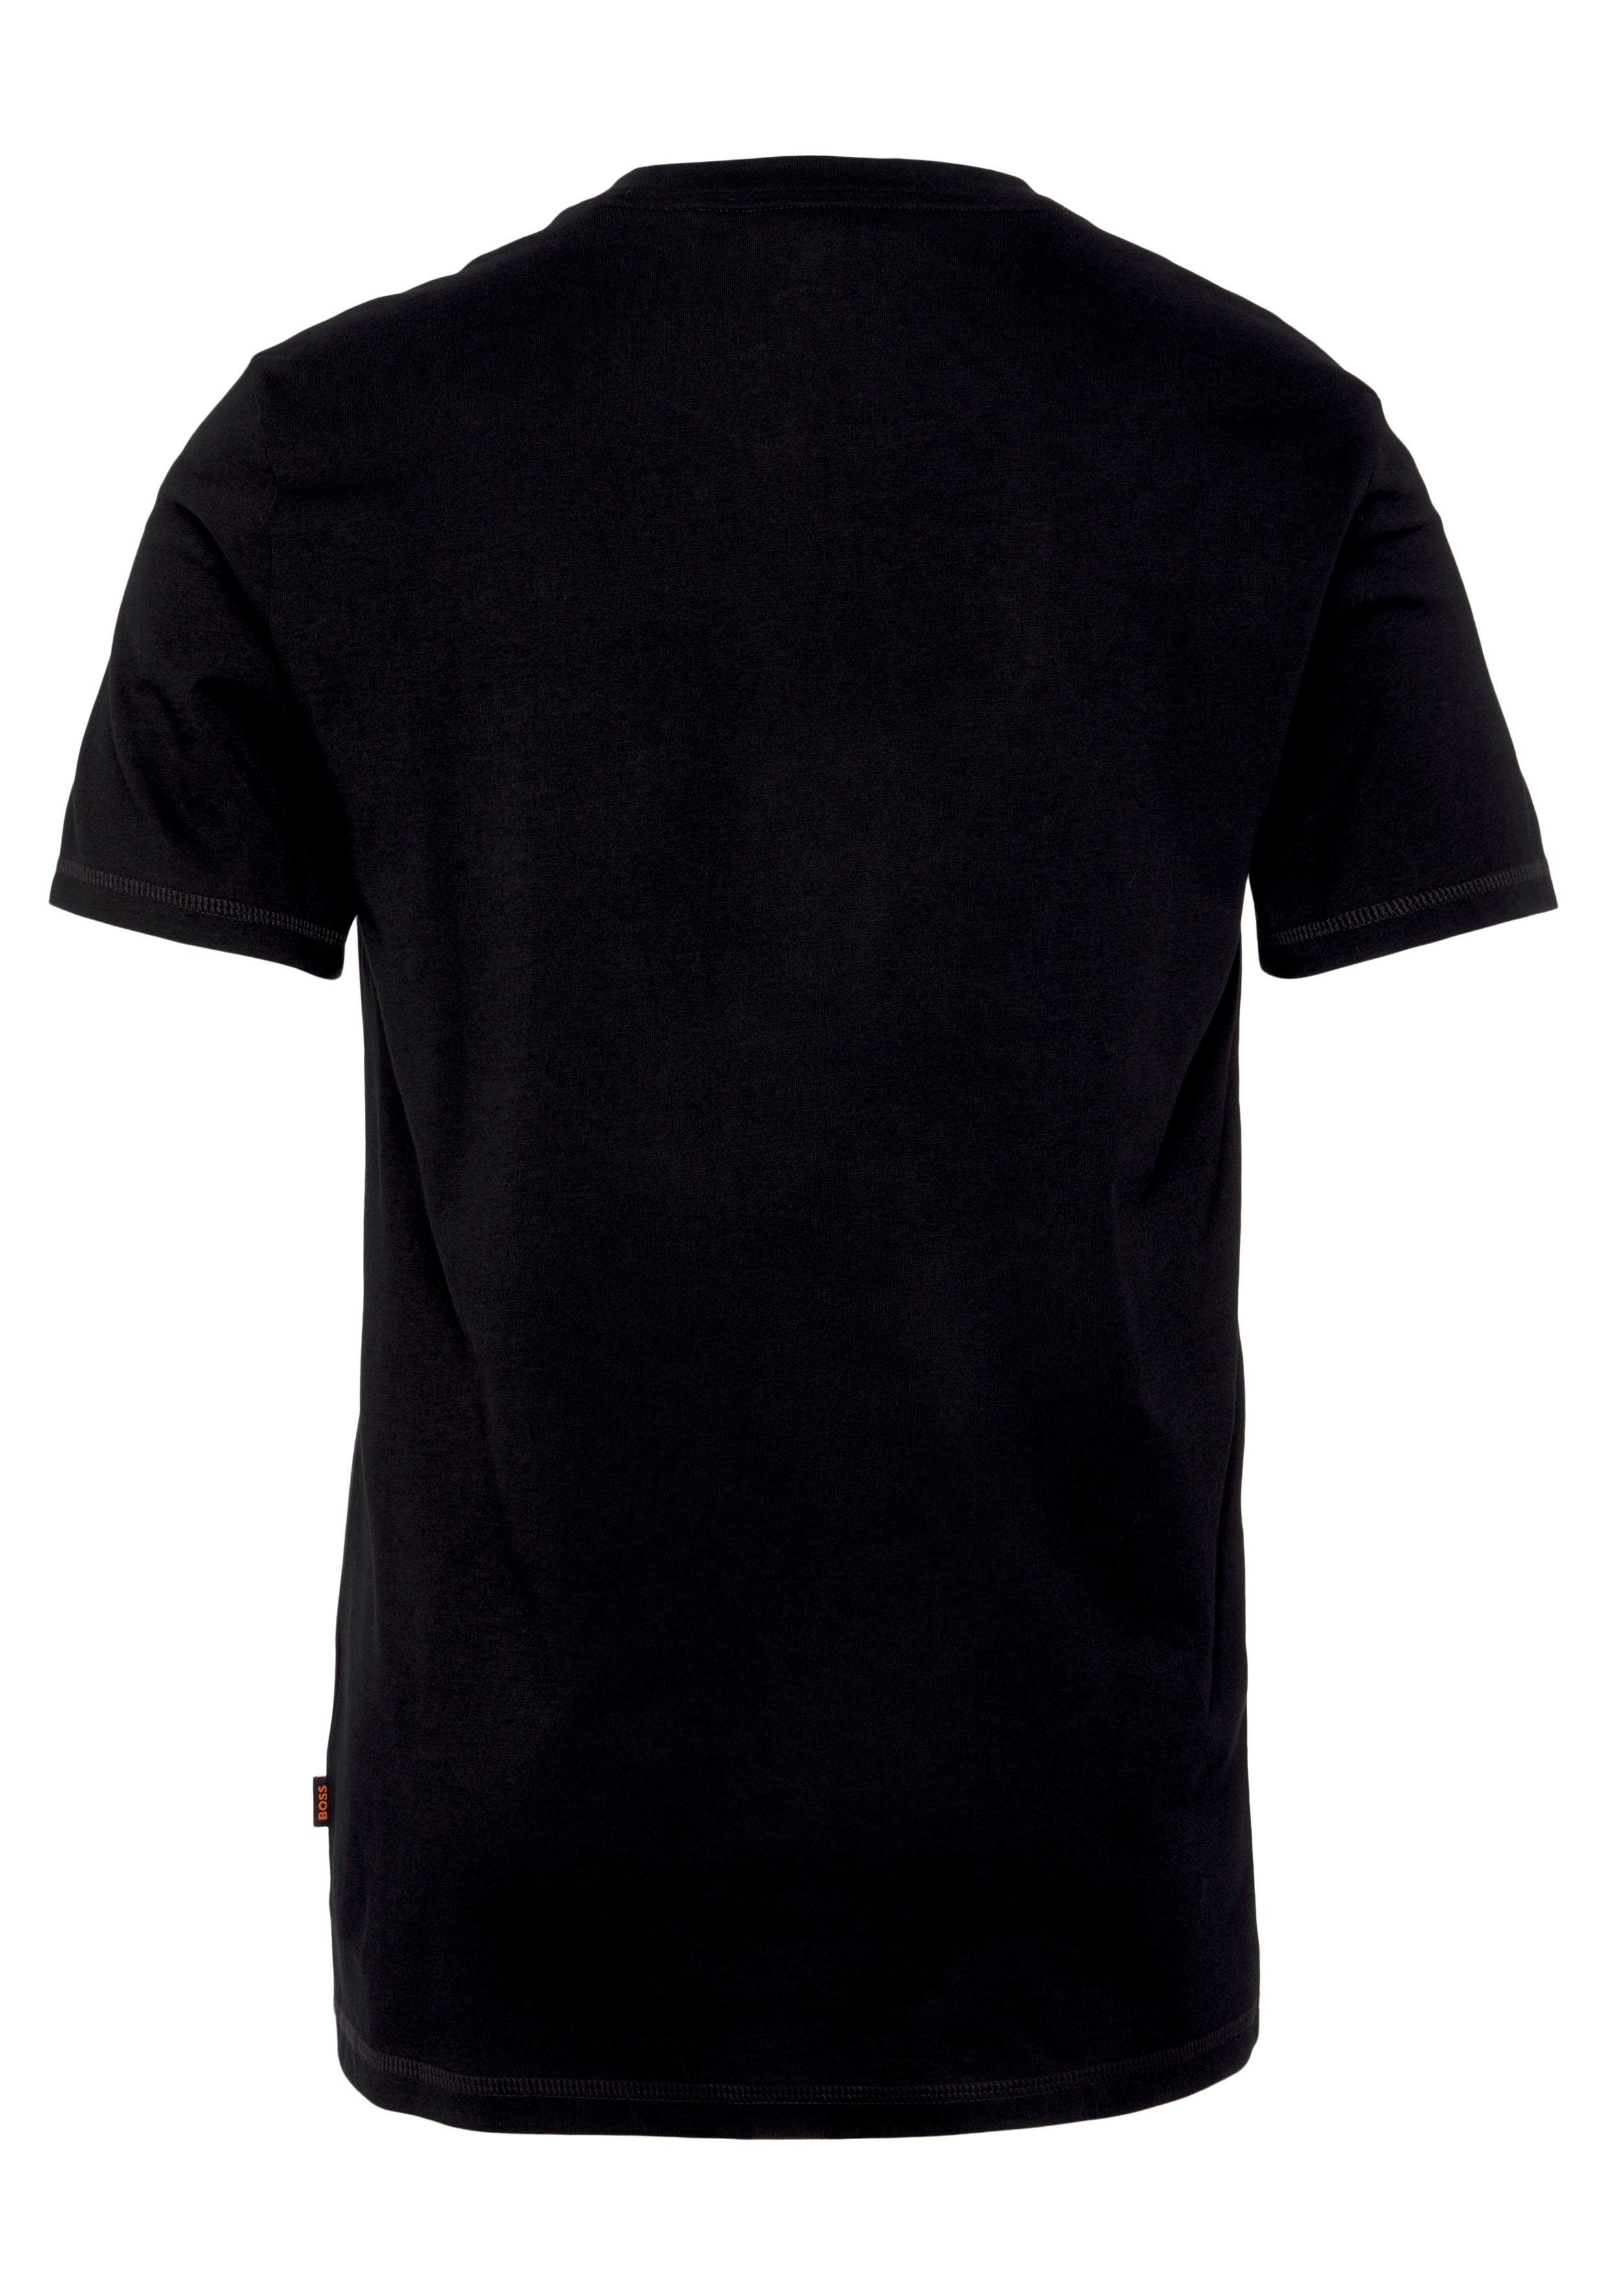 TeMessage T-Shirt Print Black001 ORANGE mit der großem auf Brust BOSS